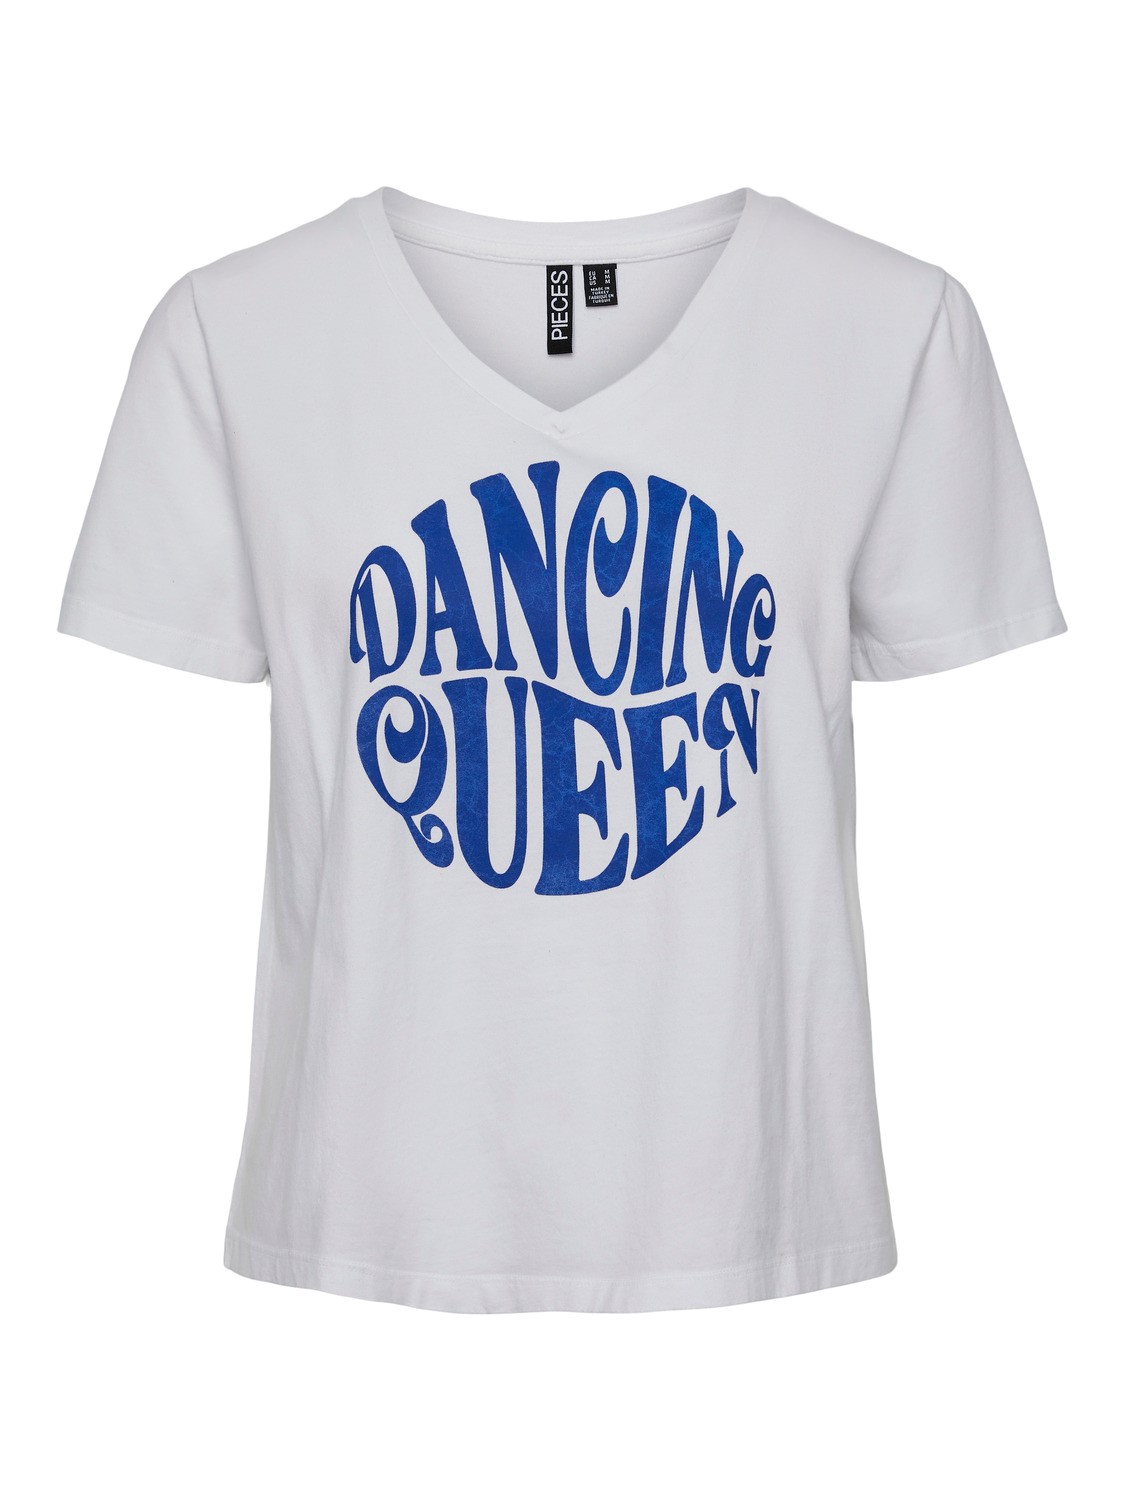 Camiseta Dancing Queen blanca